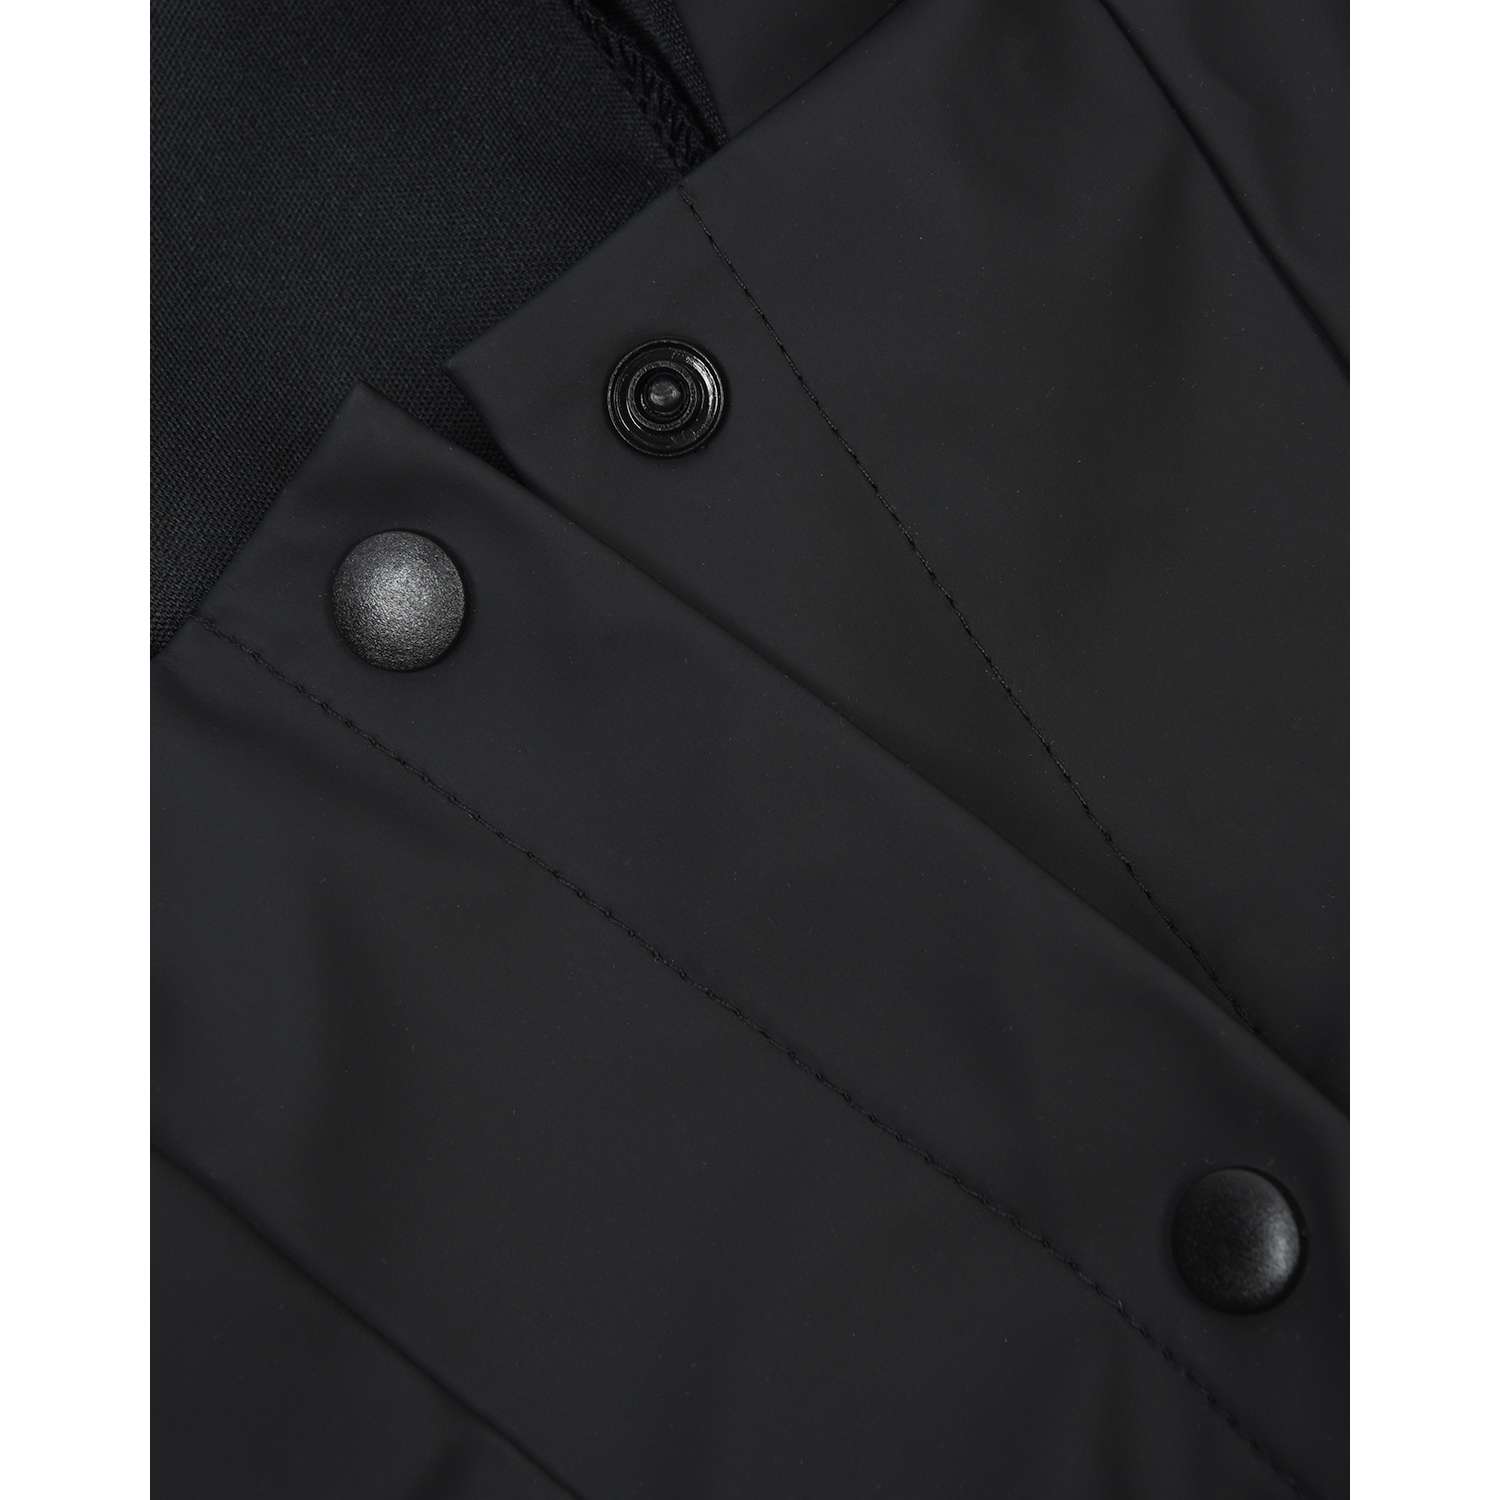 Дождевик-куртка для собак Zoozavr чёрный 55 - фото 3